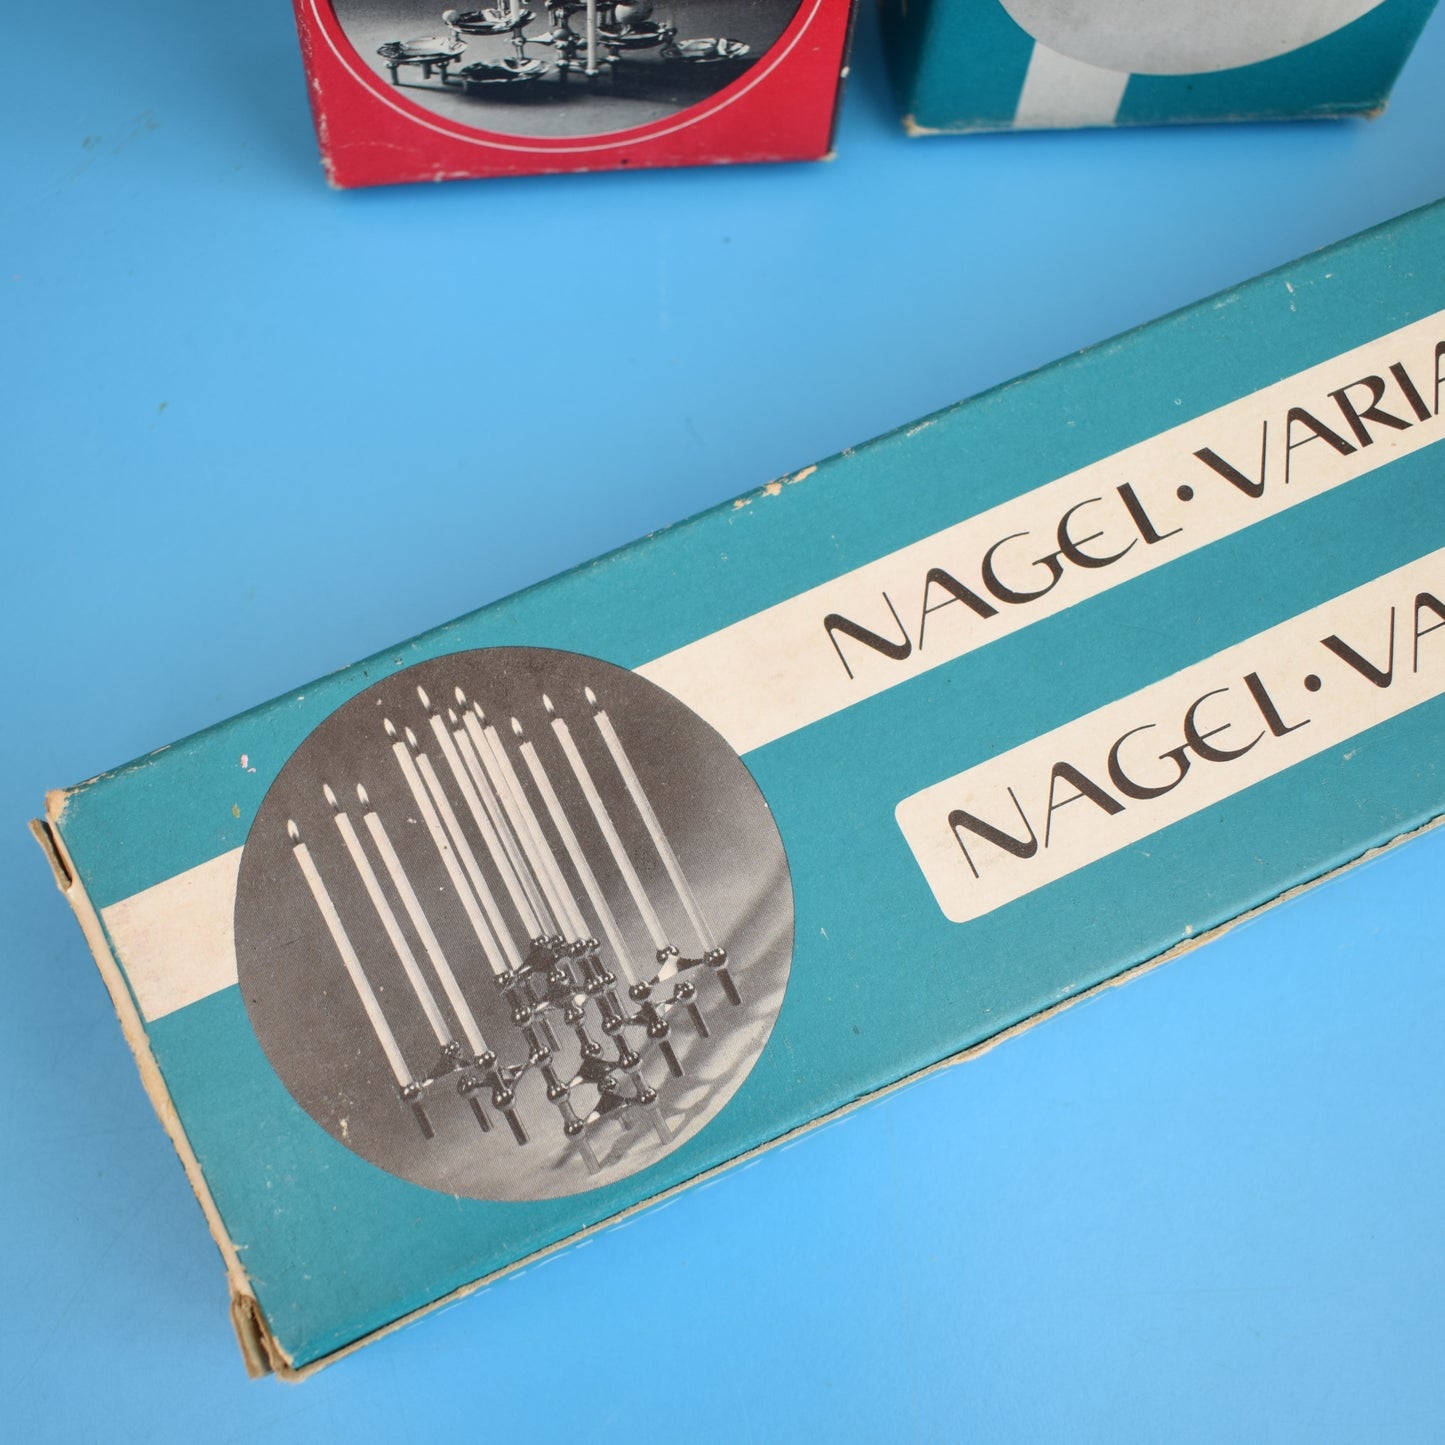 Vintage 1960s Nagel Candles - For Interlocking Holders